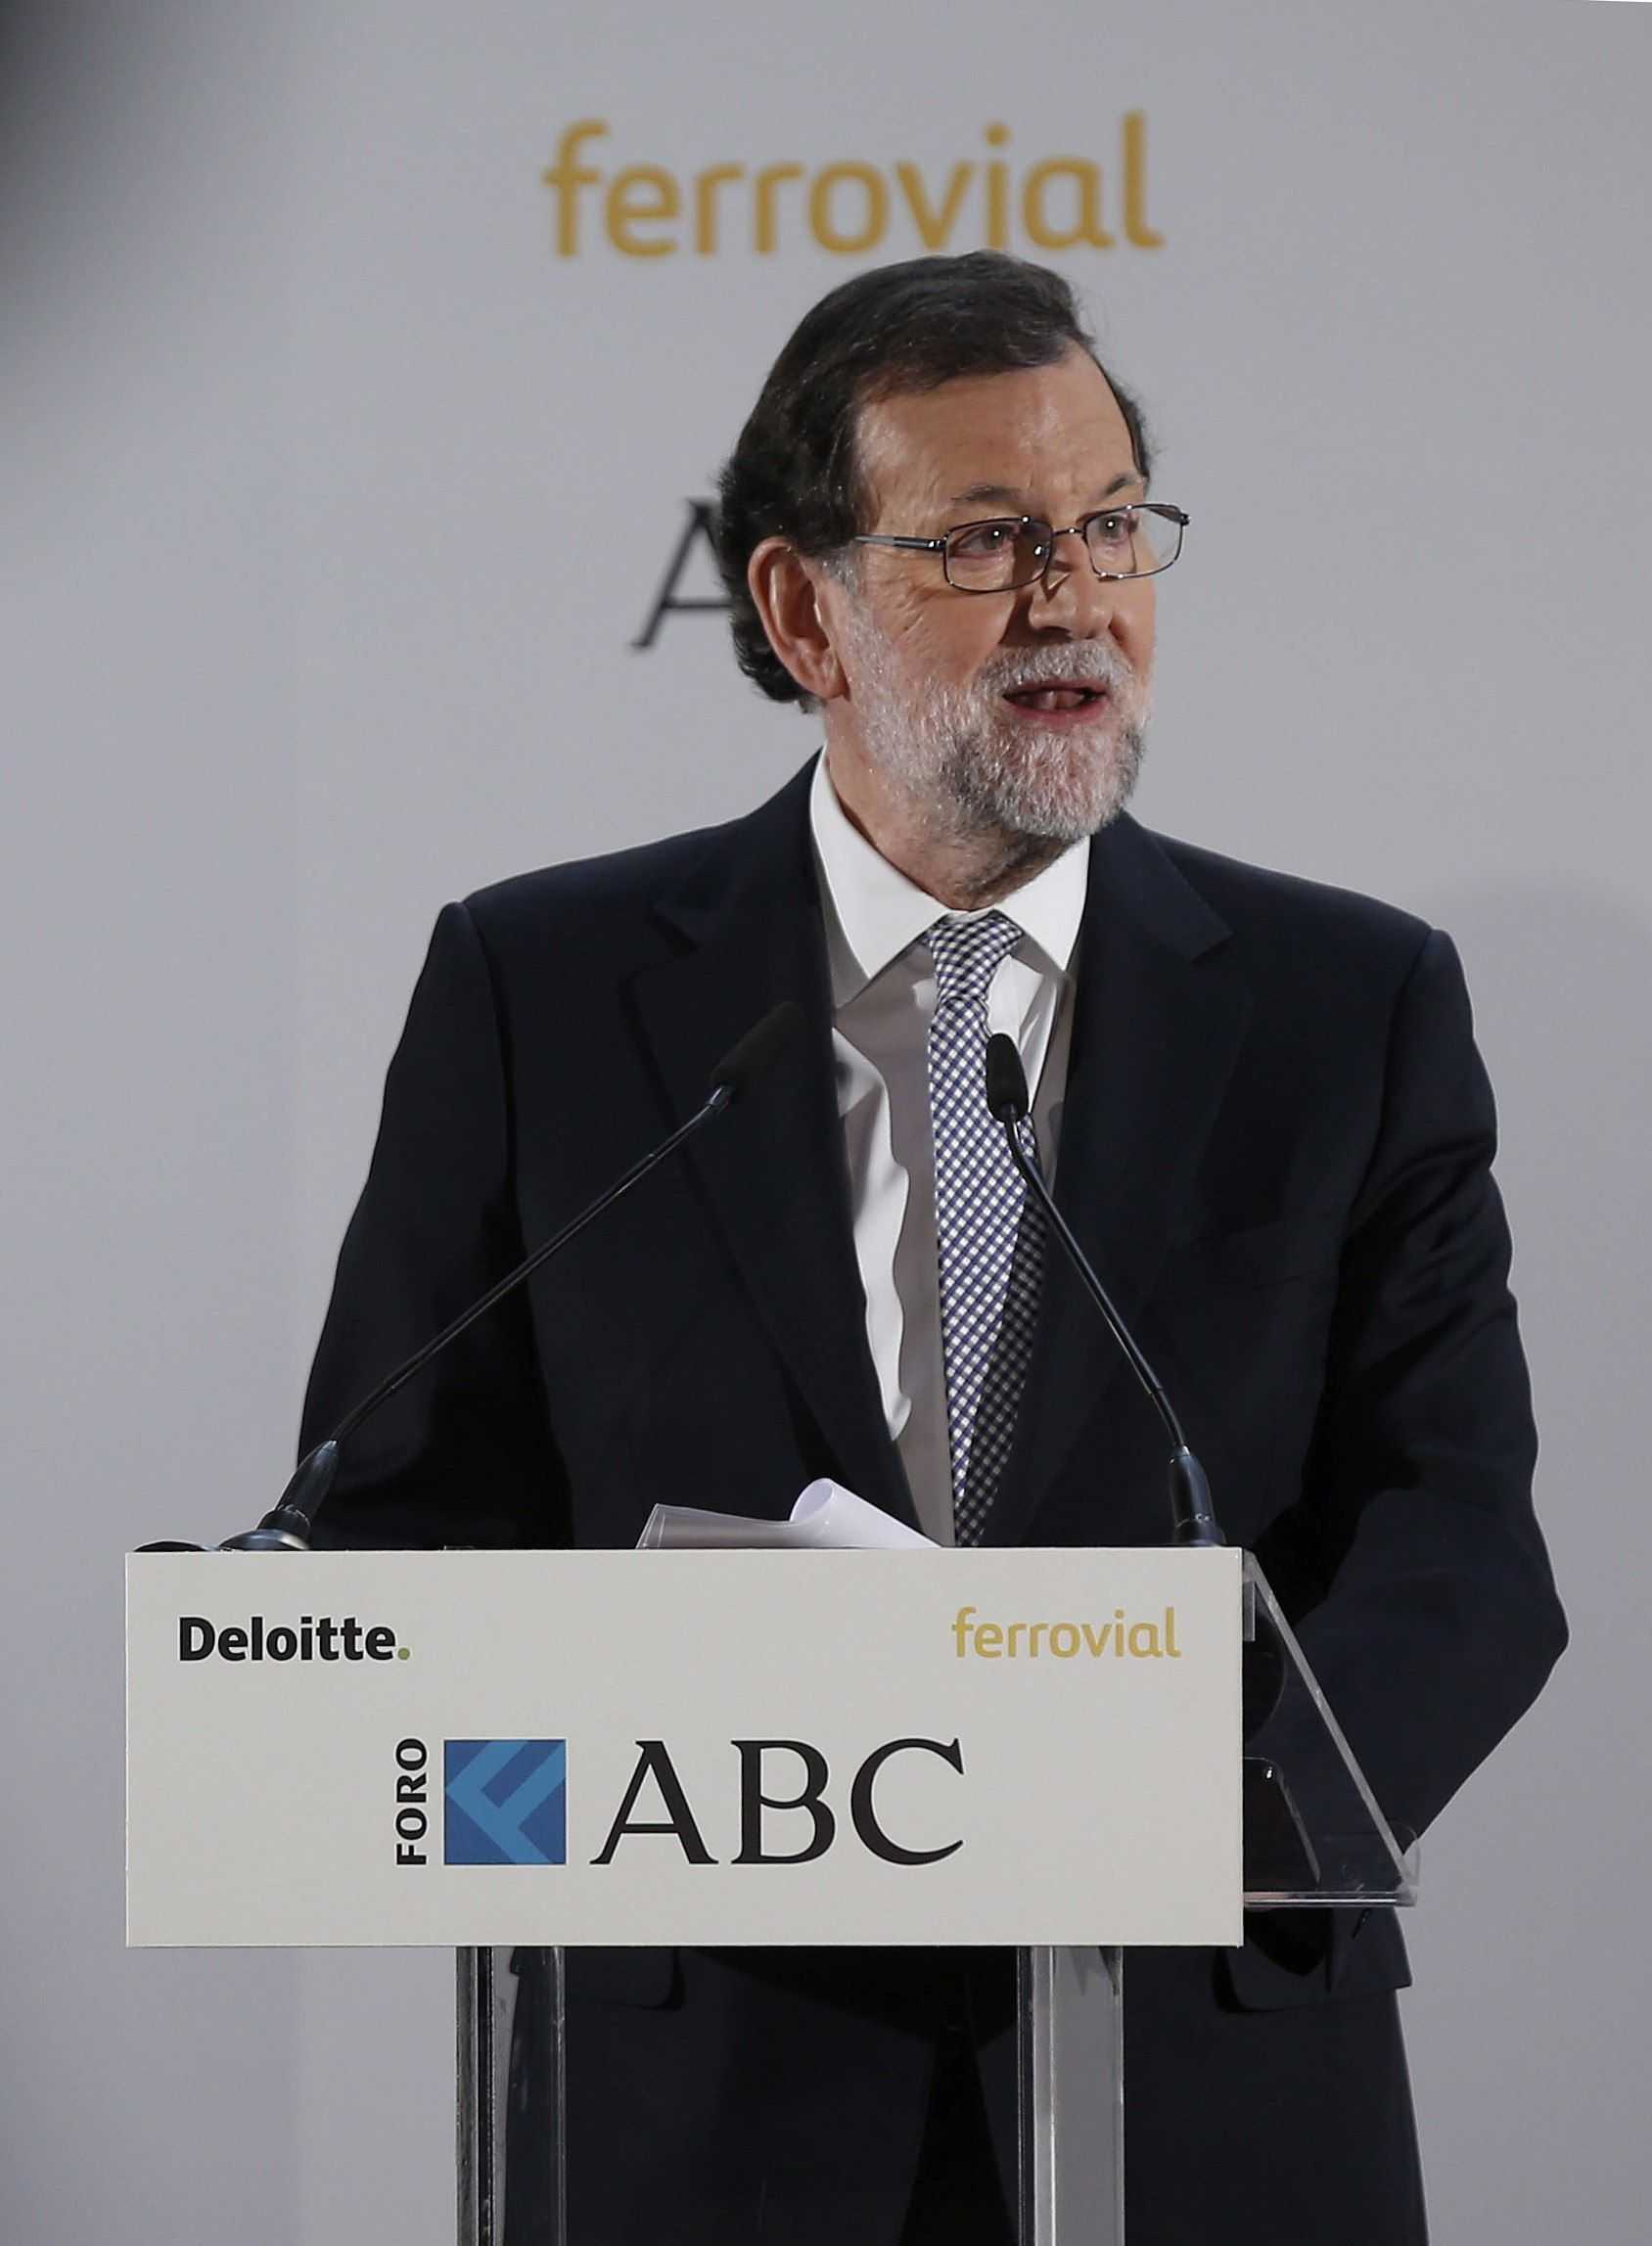 El català no et serveix per ser mariner (i 11 normes més de Rajoy contra la llengua)